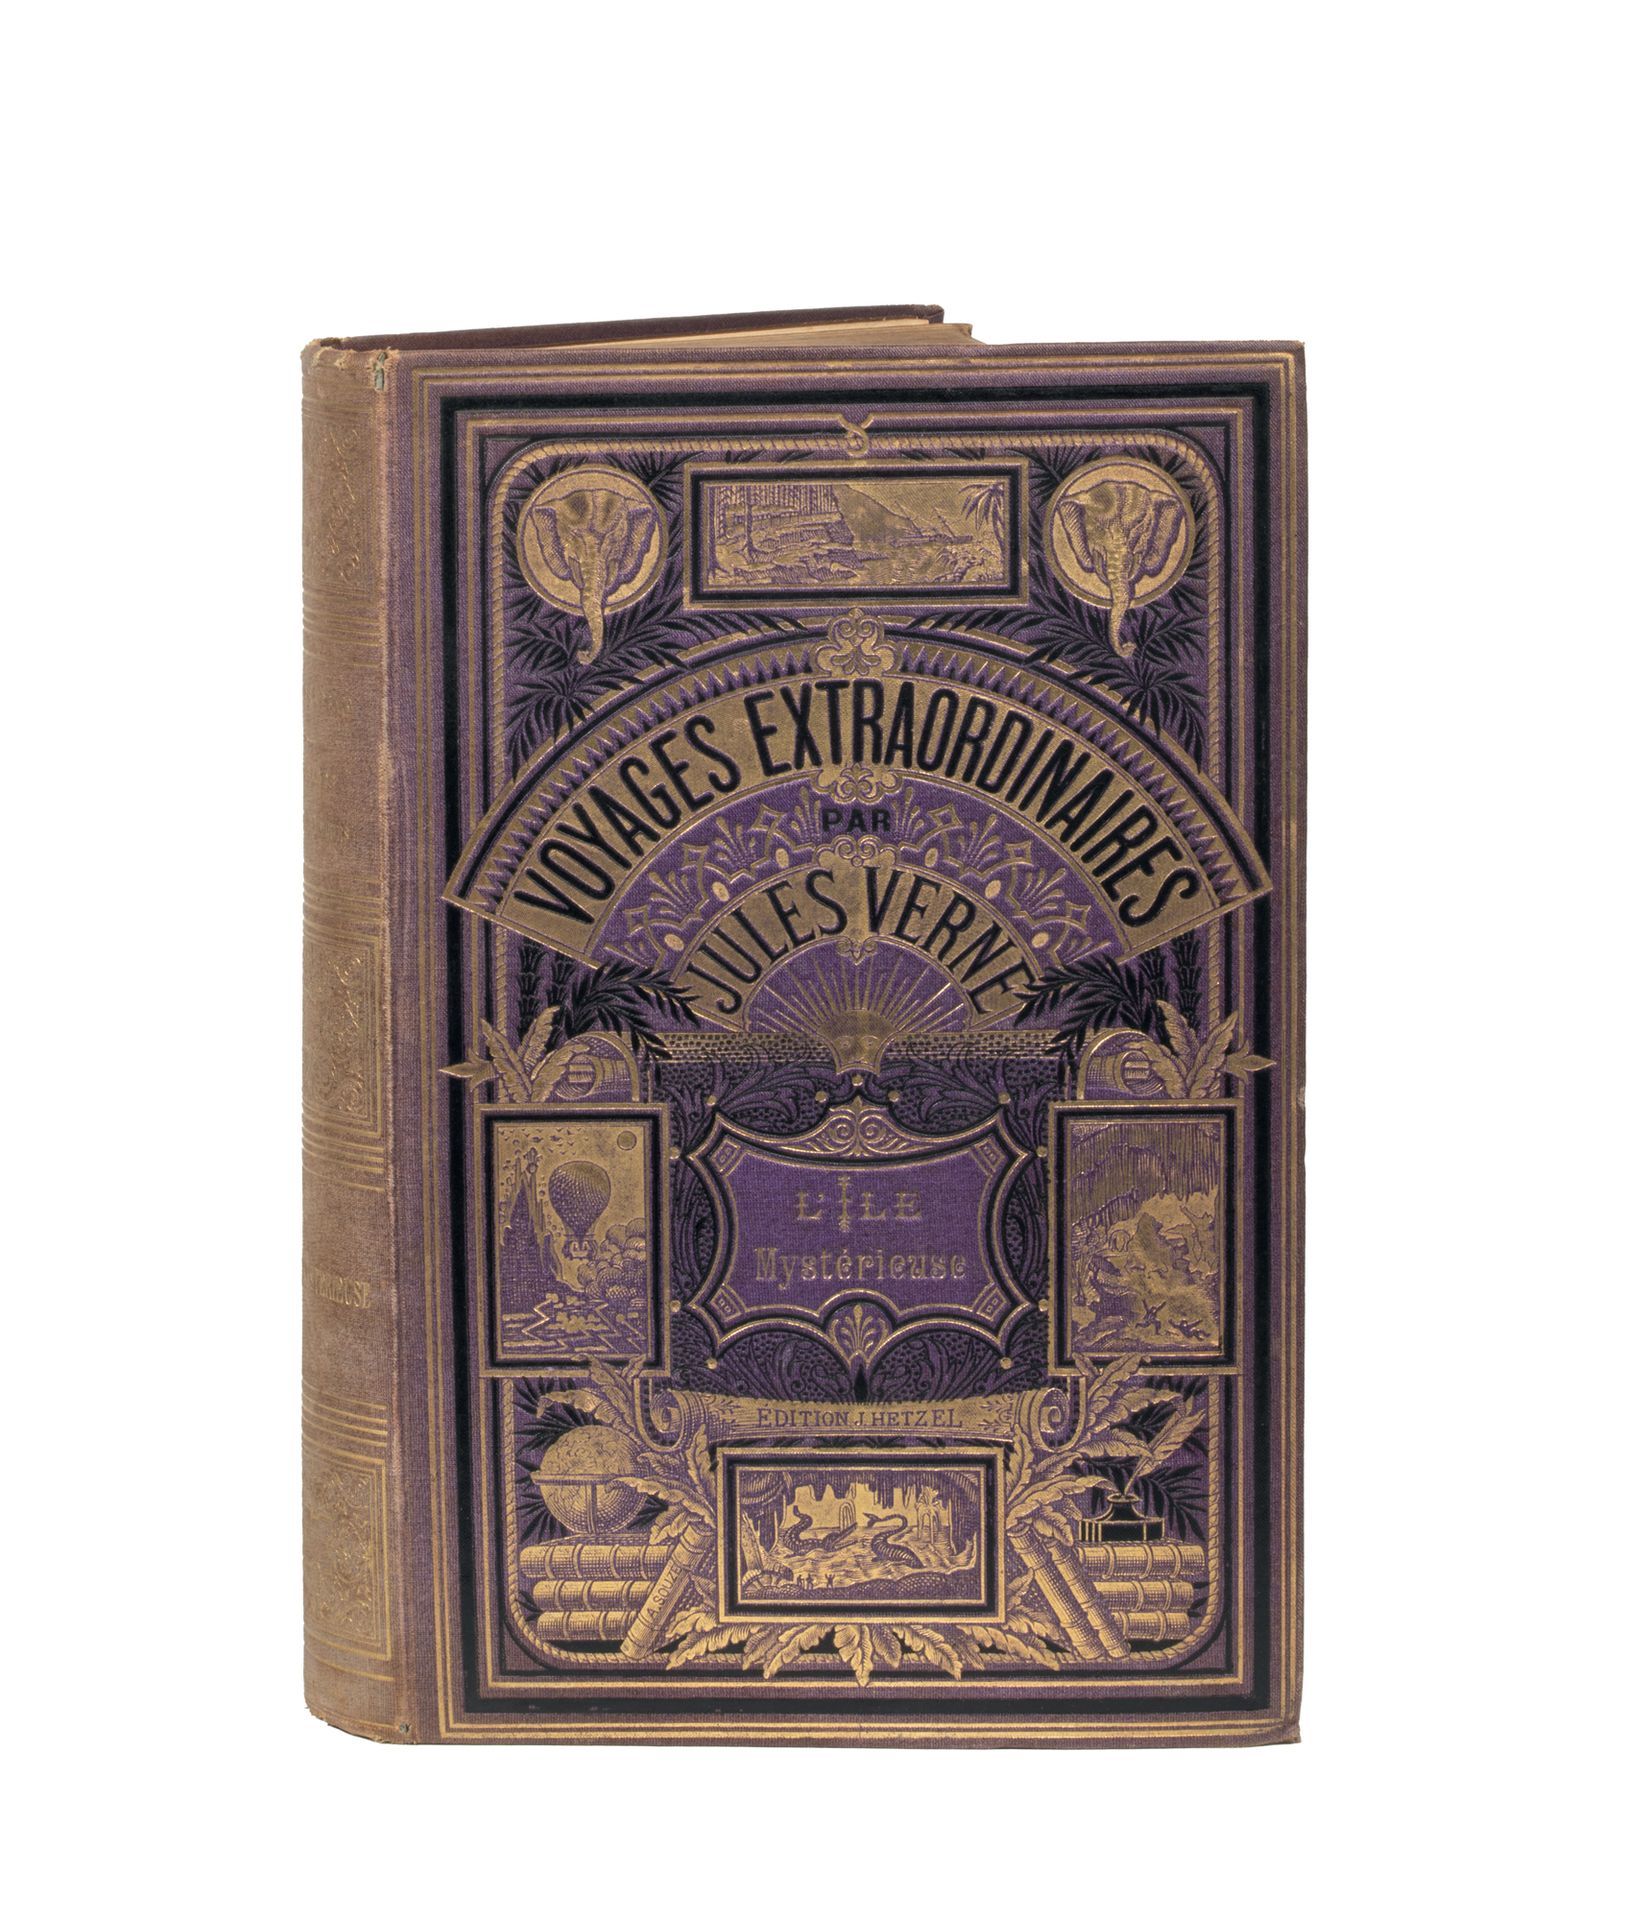 Null [Mers et Océans] L'Île Mystérieuse par Jules Verne. Illustrations de Férat.&hellip;